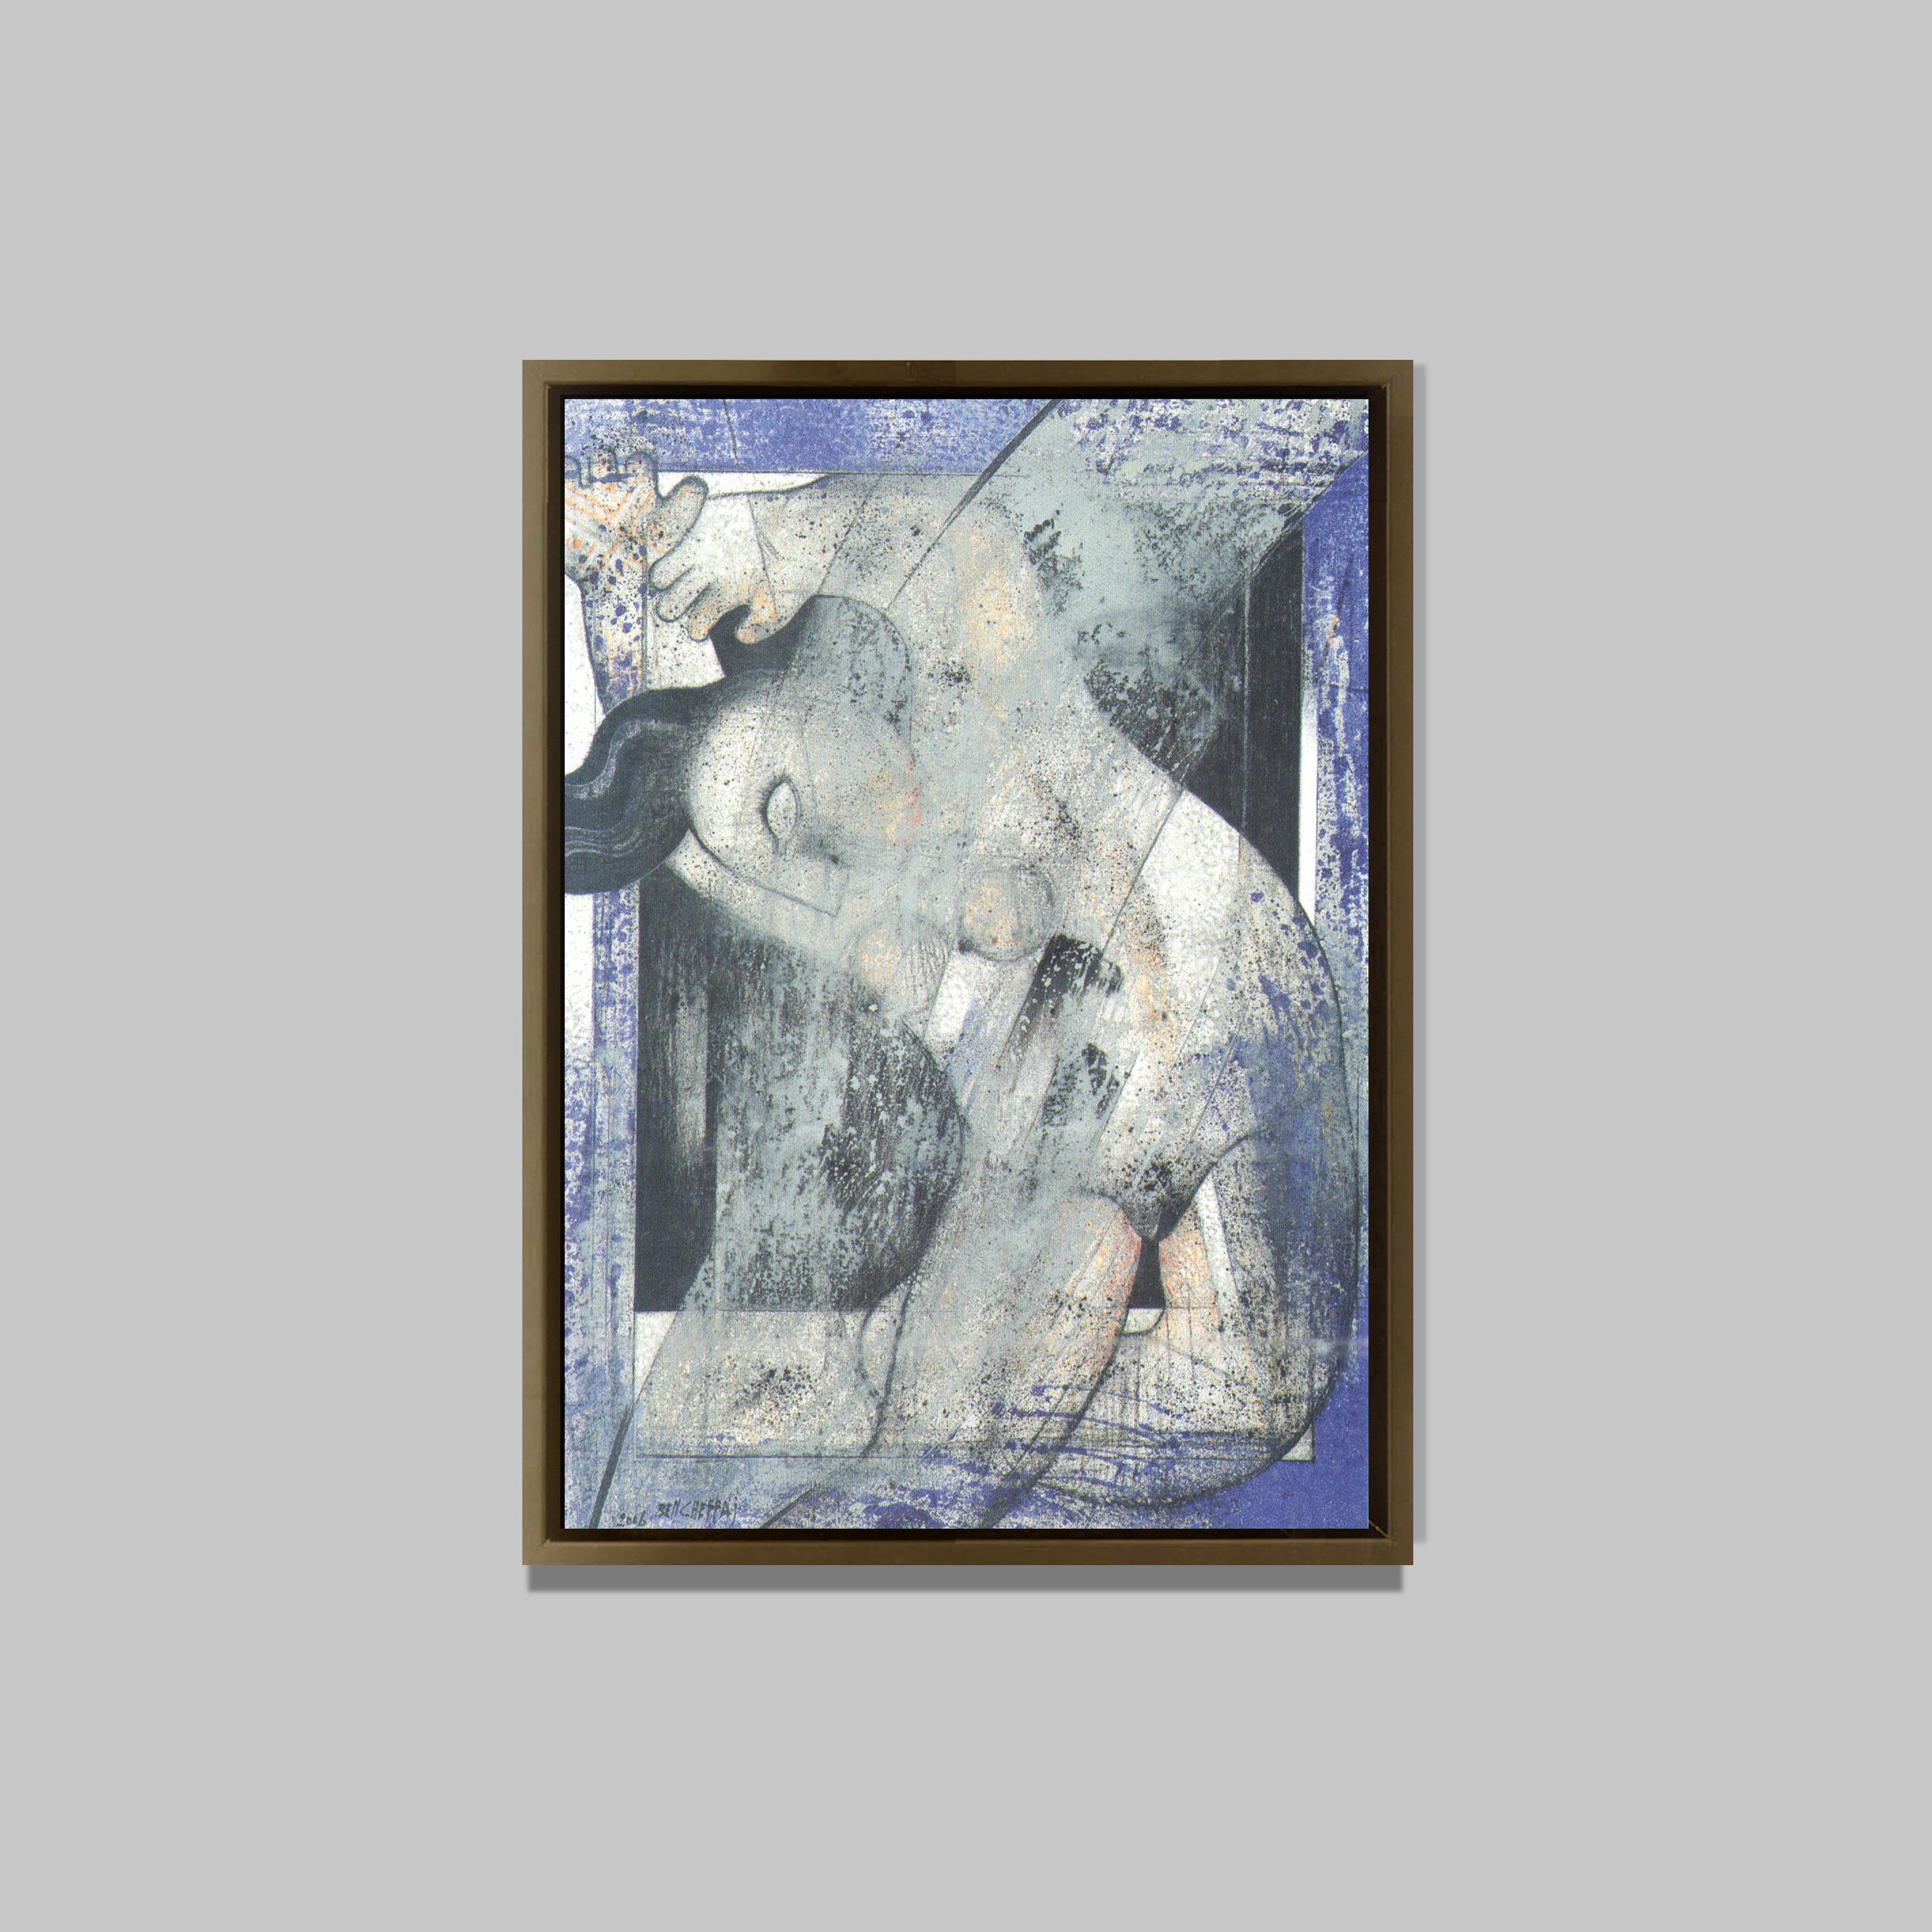 La danseuse crétoise, 2006
Huile sur toile
95 x 68 cm